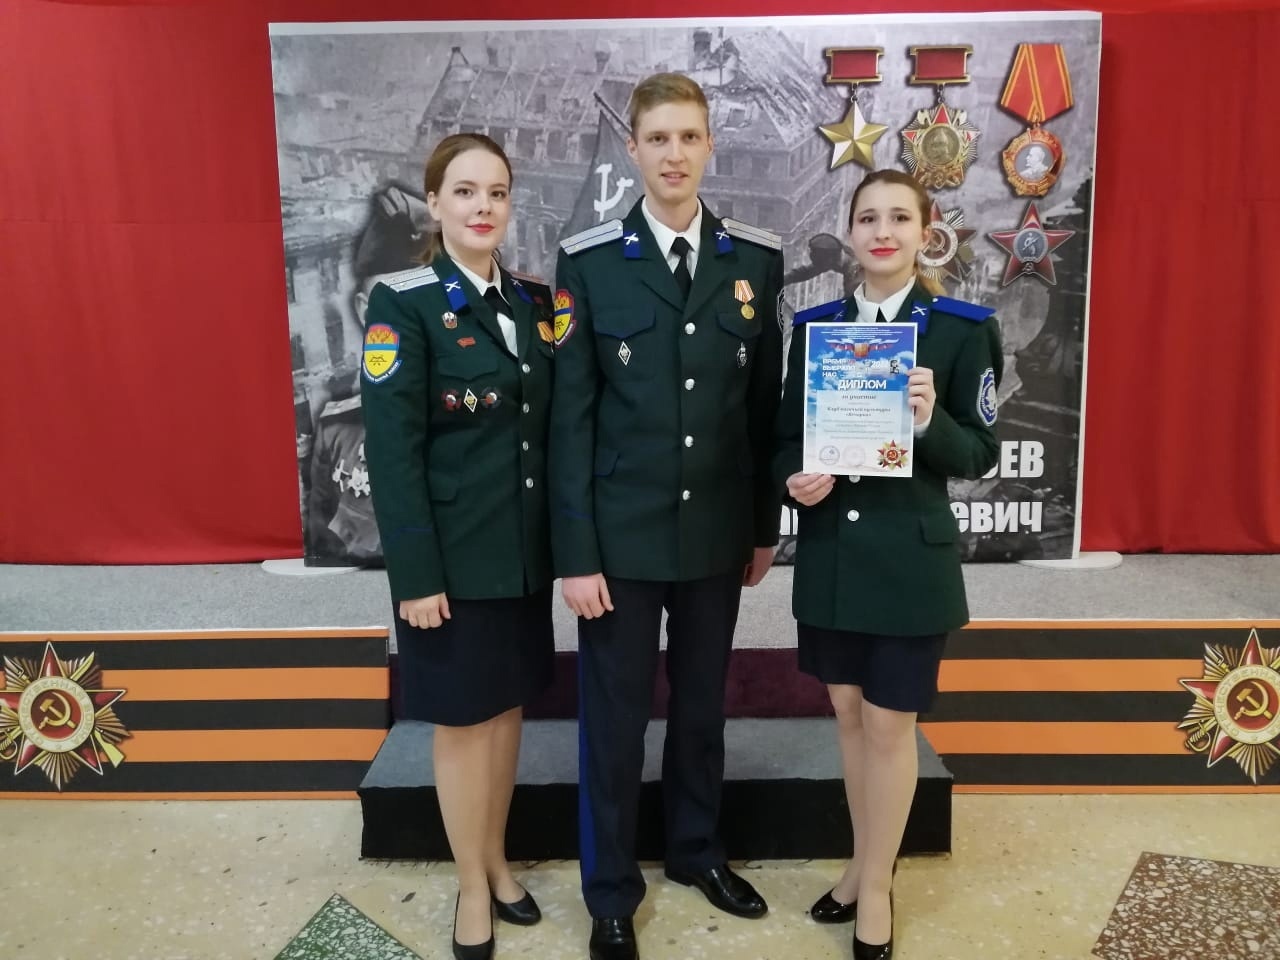 Молодой казачий коллектив из Верхней Пышмы стал лауреатом конкурса солдатской и военно-патриотической песни